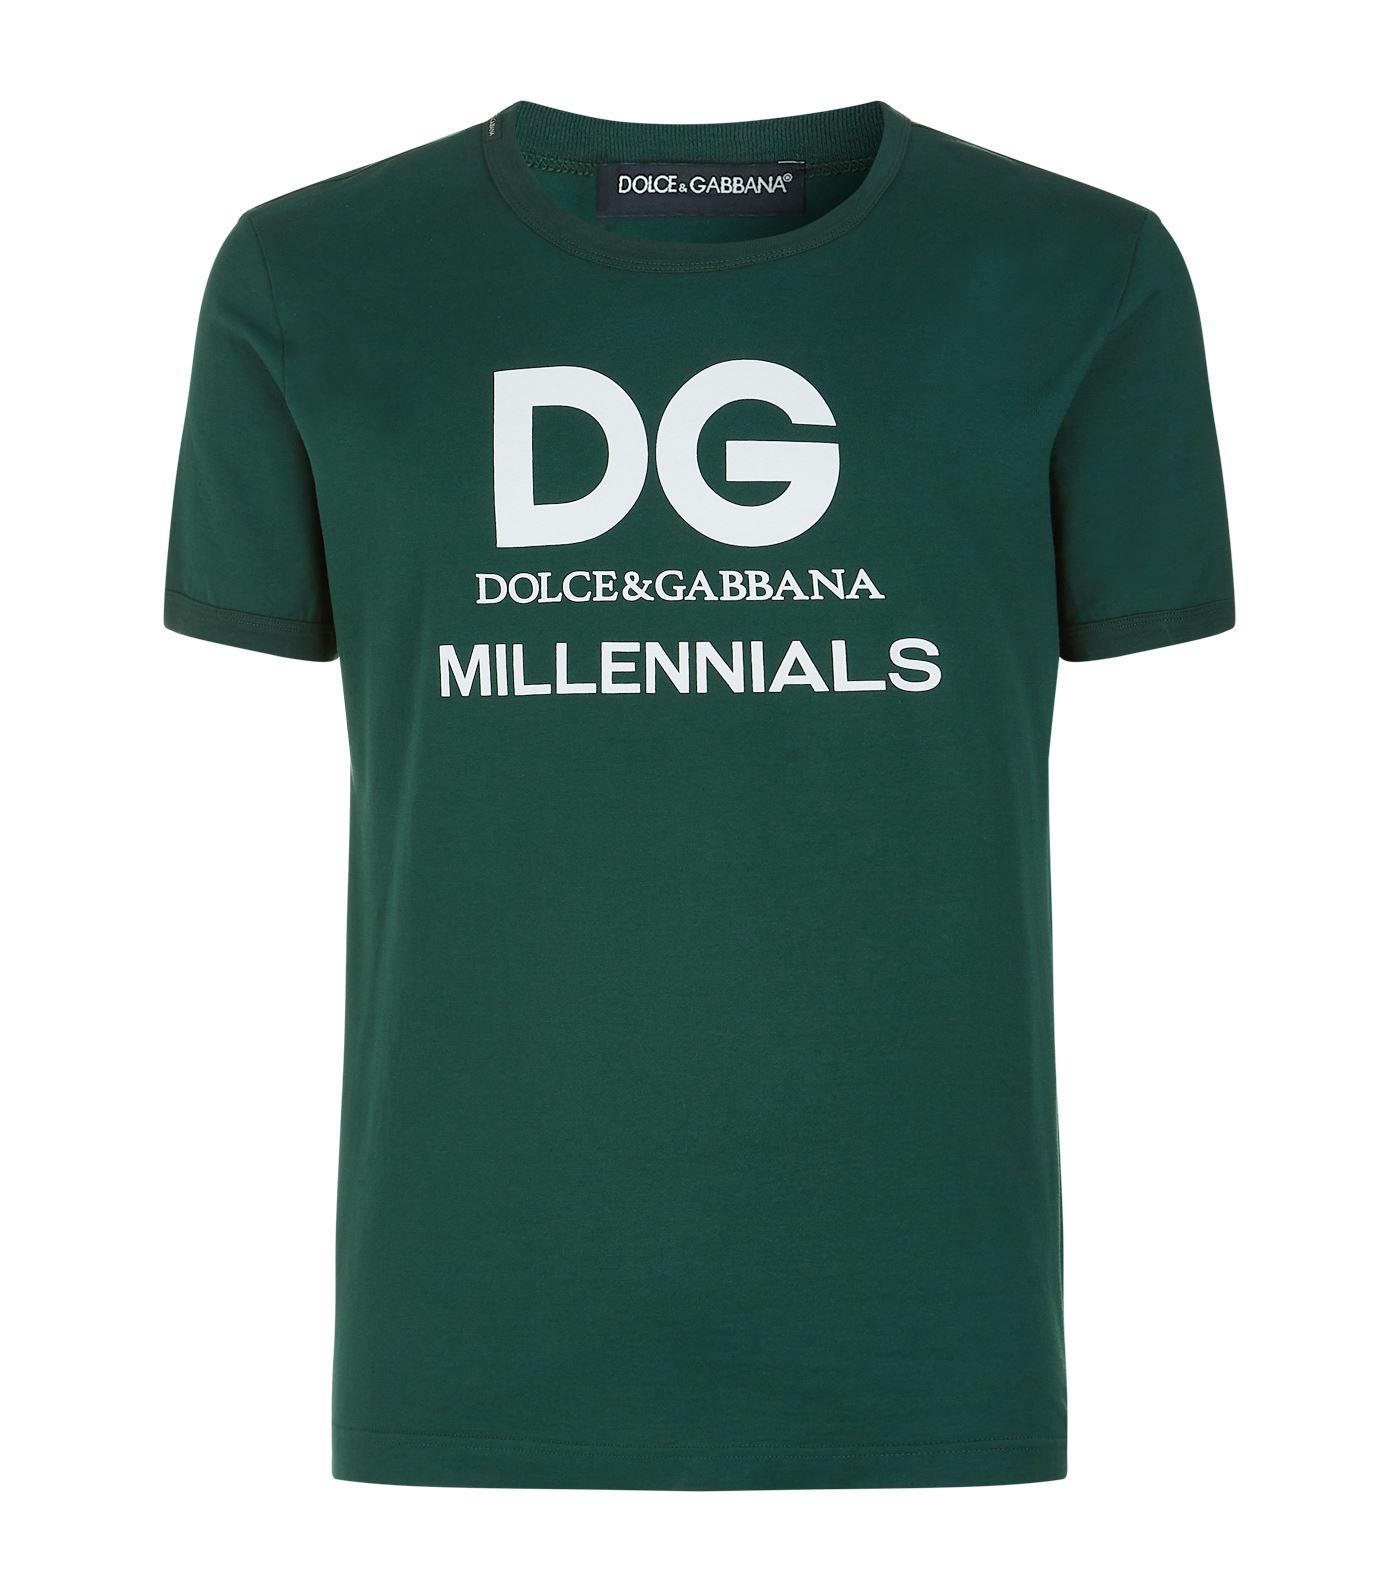 dg millennials t shirt